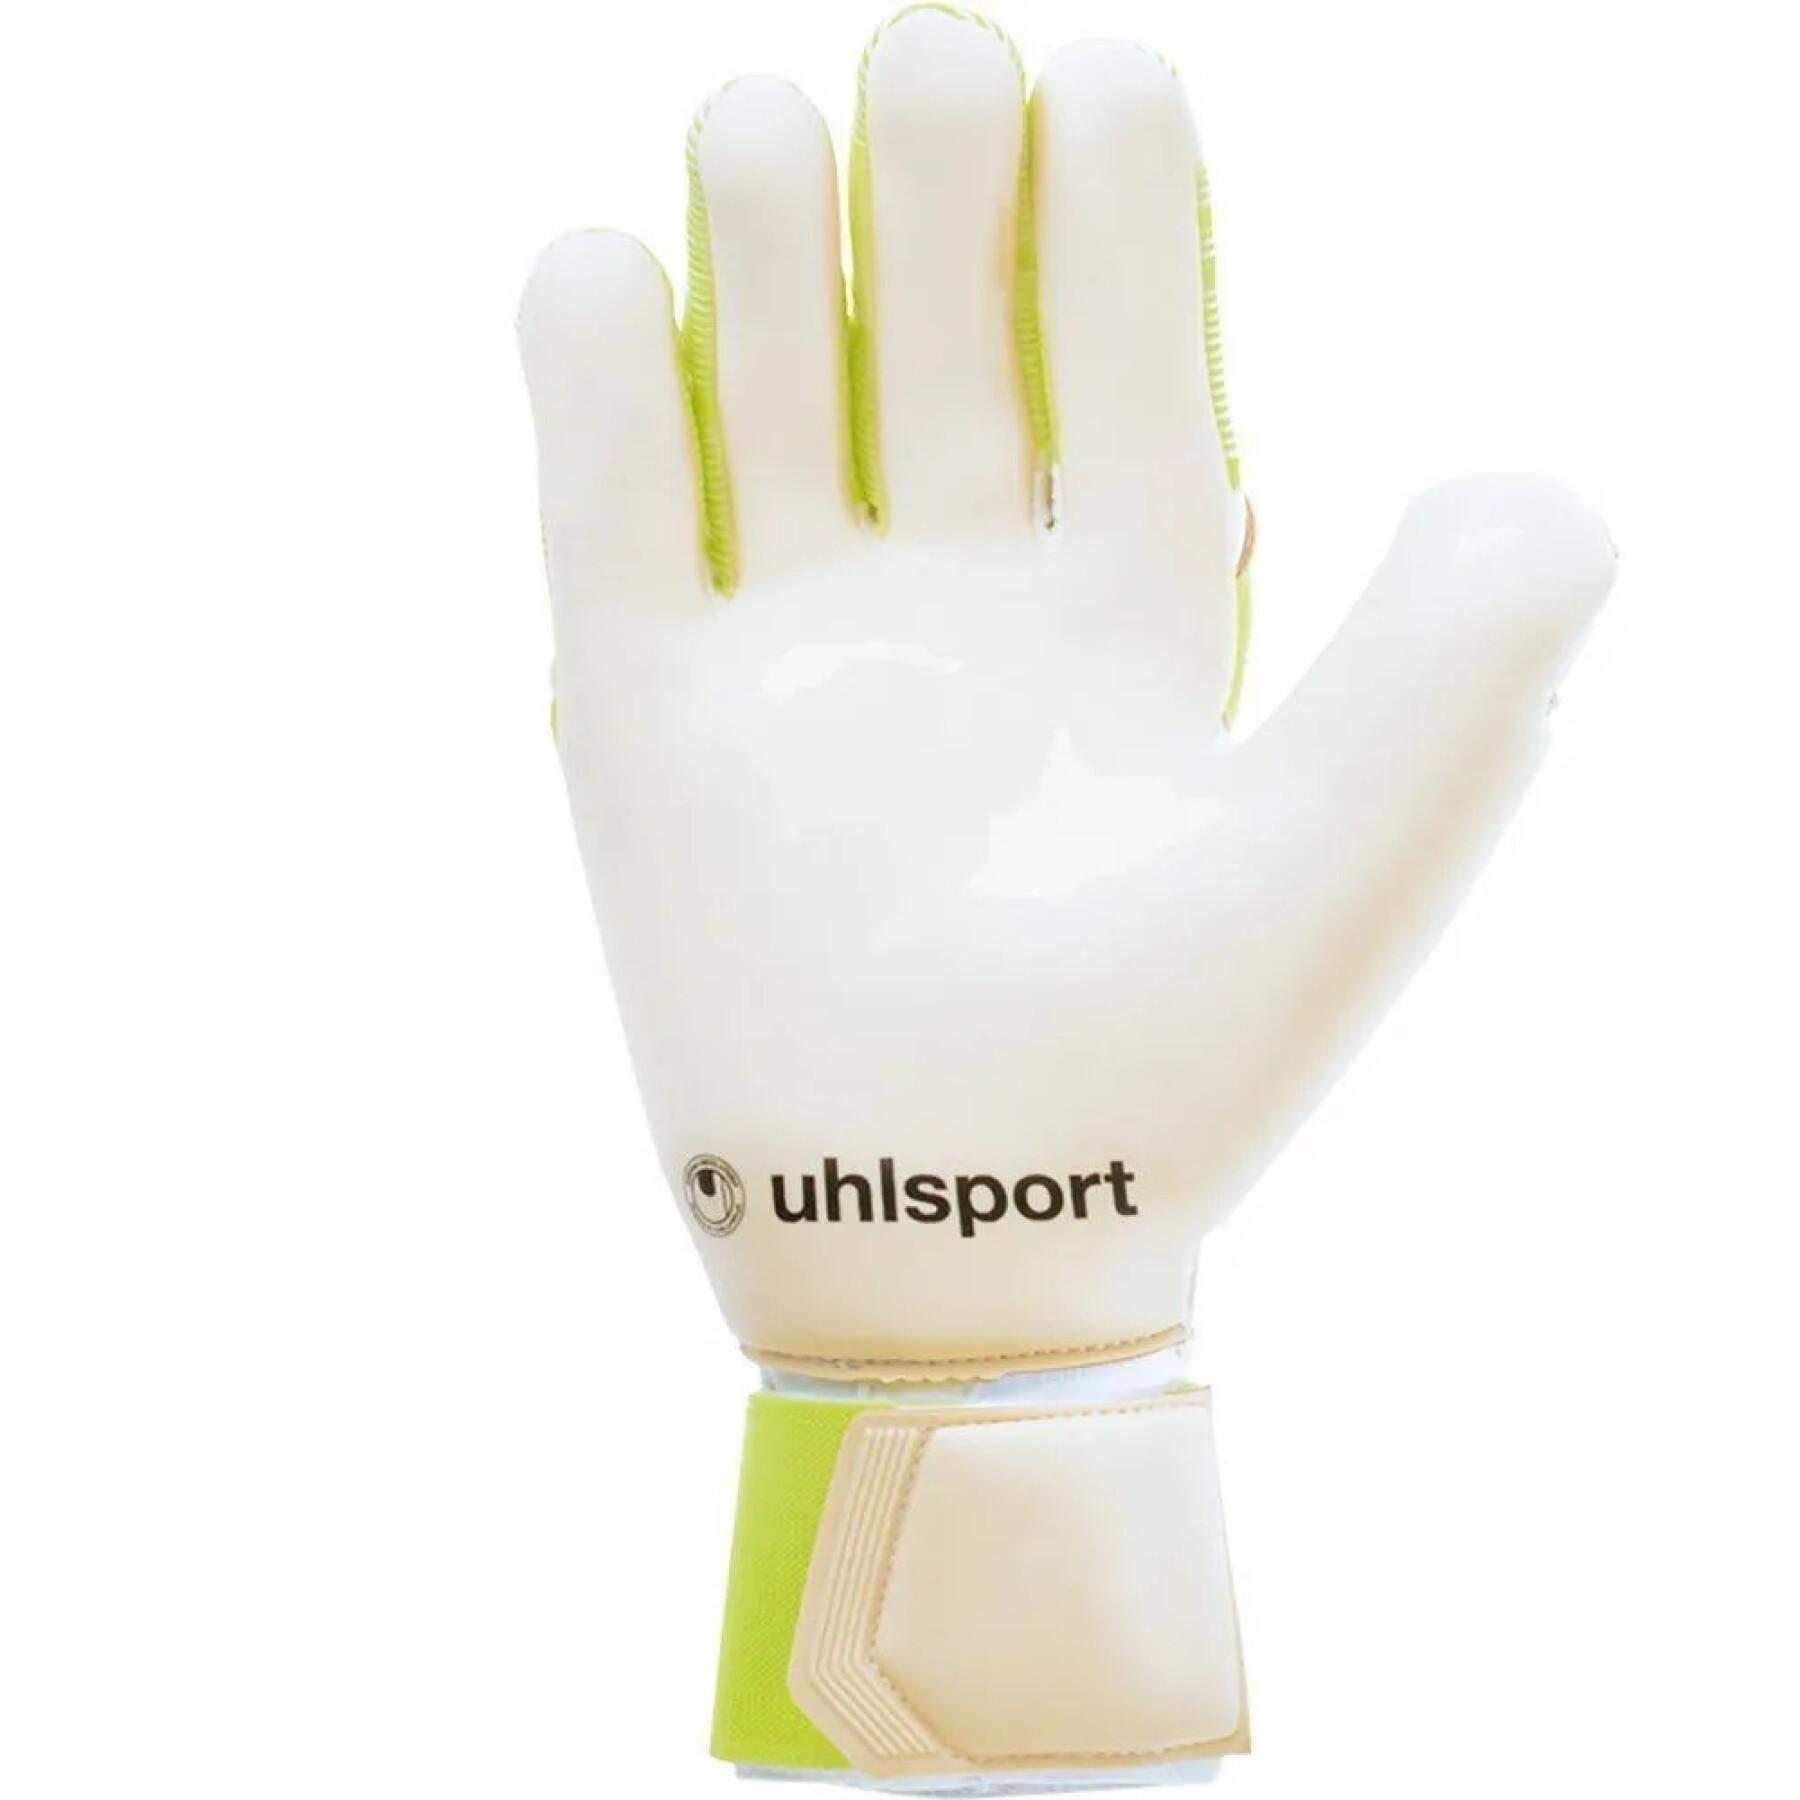 Goalkeeper gloves Uhlsport Pure Alliance AbsolutGrip Reflex